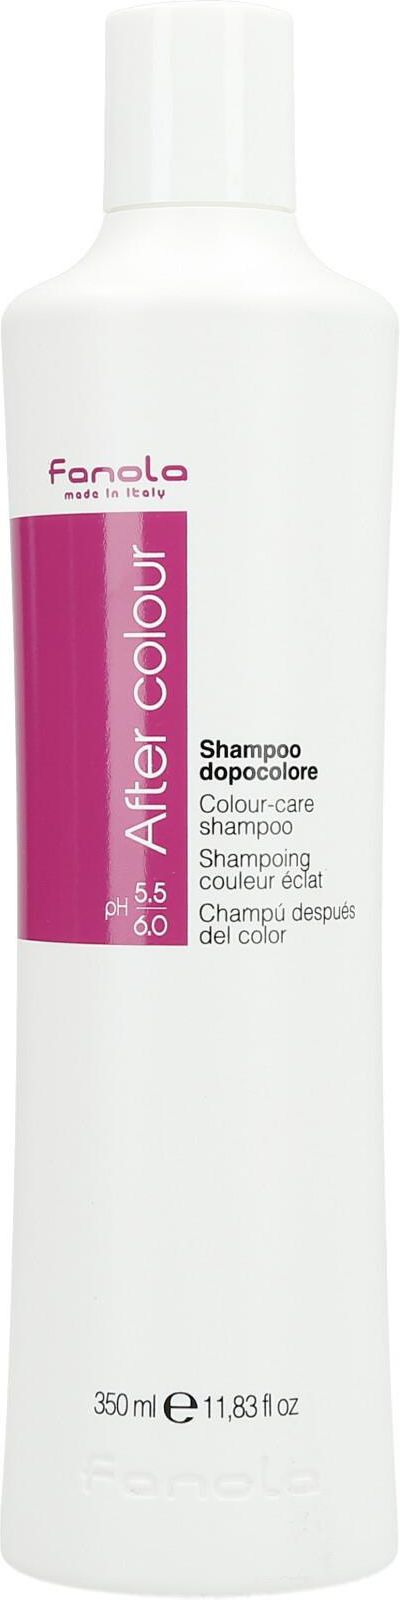 fanola after color szampon do włosów farbowanych skład